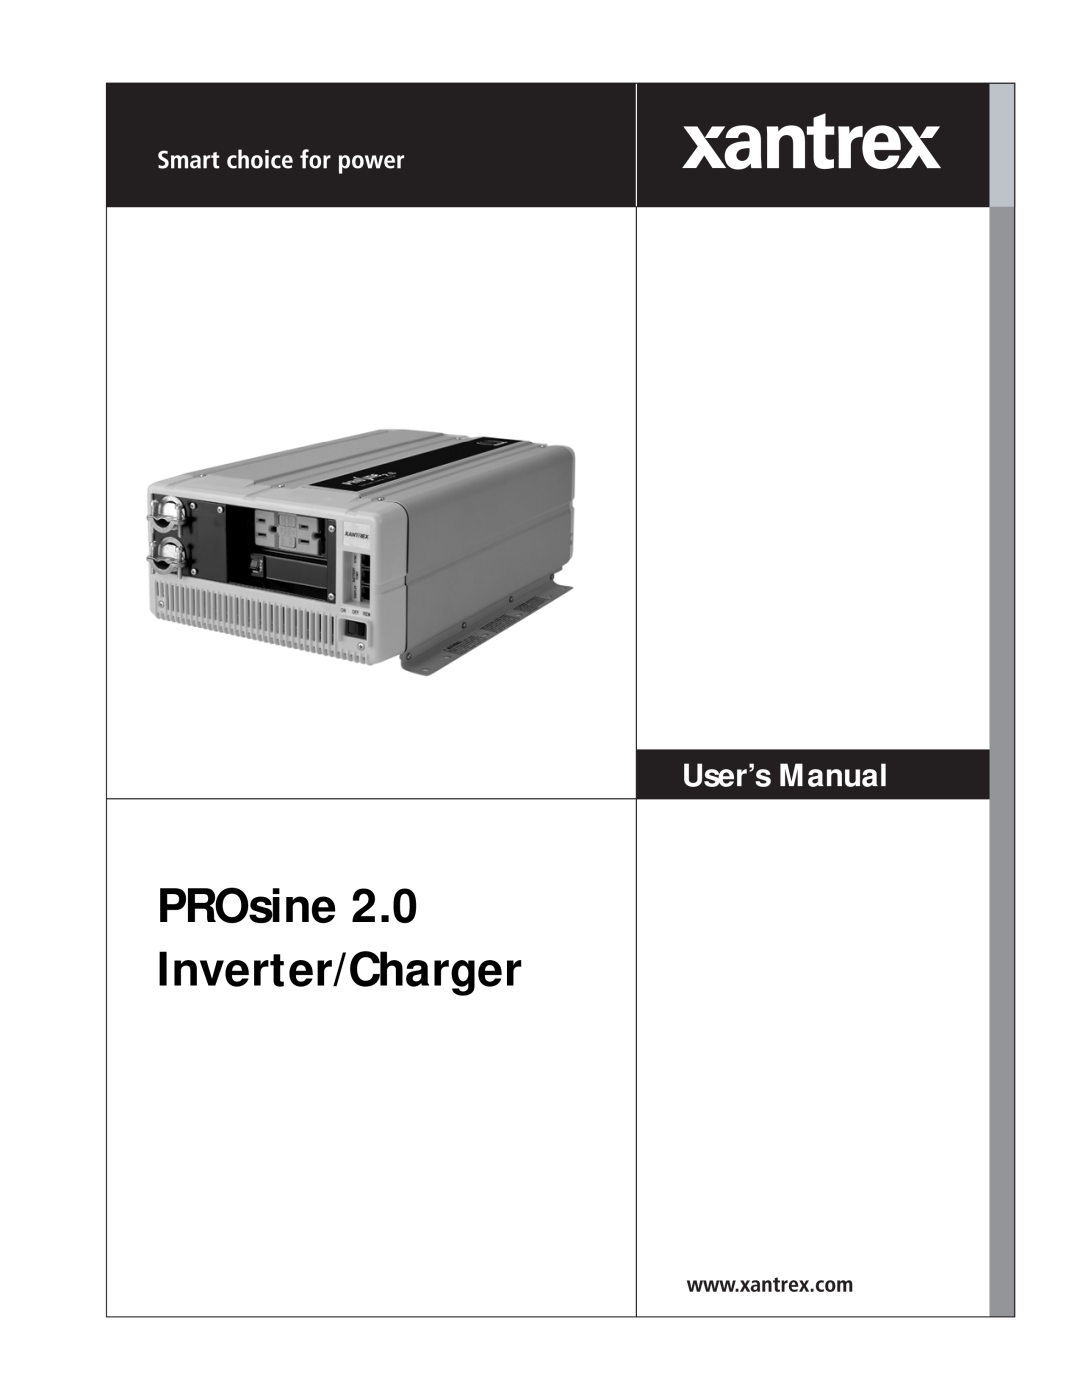 Xantrex Technology PROsine 2.0 user manual PROsine Inverter/Charger, User’s Manual 